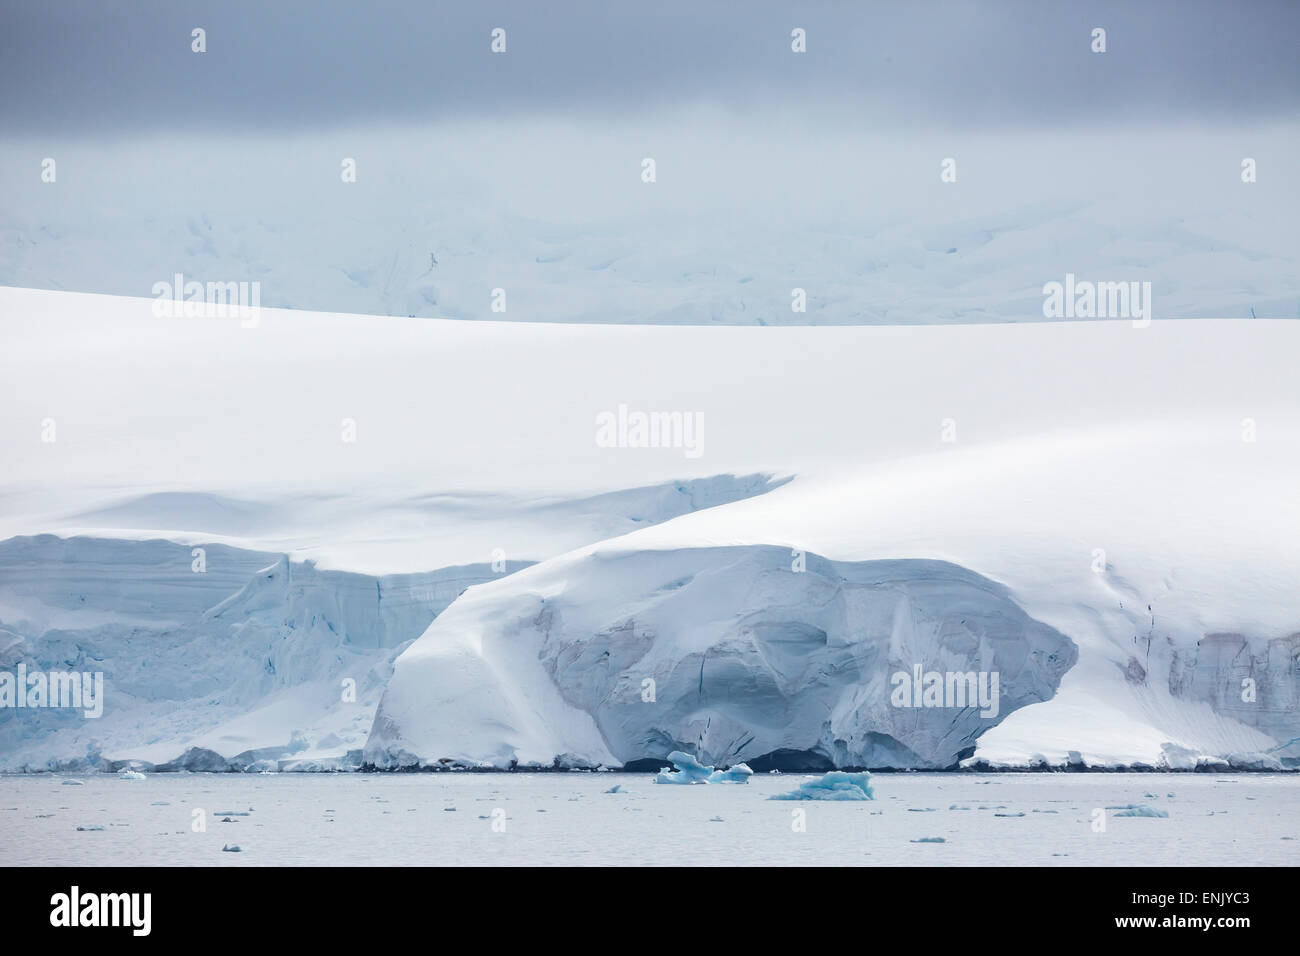 Montagnes couvertes de neige et glaciers dans la baie Dallmann, Antarctique, les régions polaires Banque D'Images